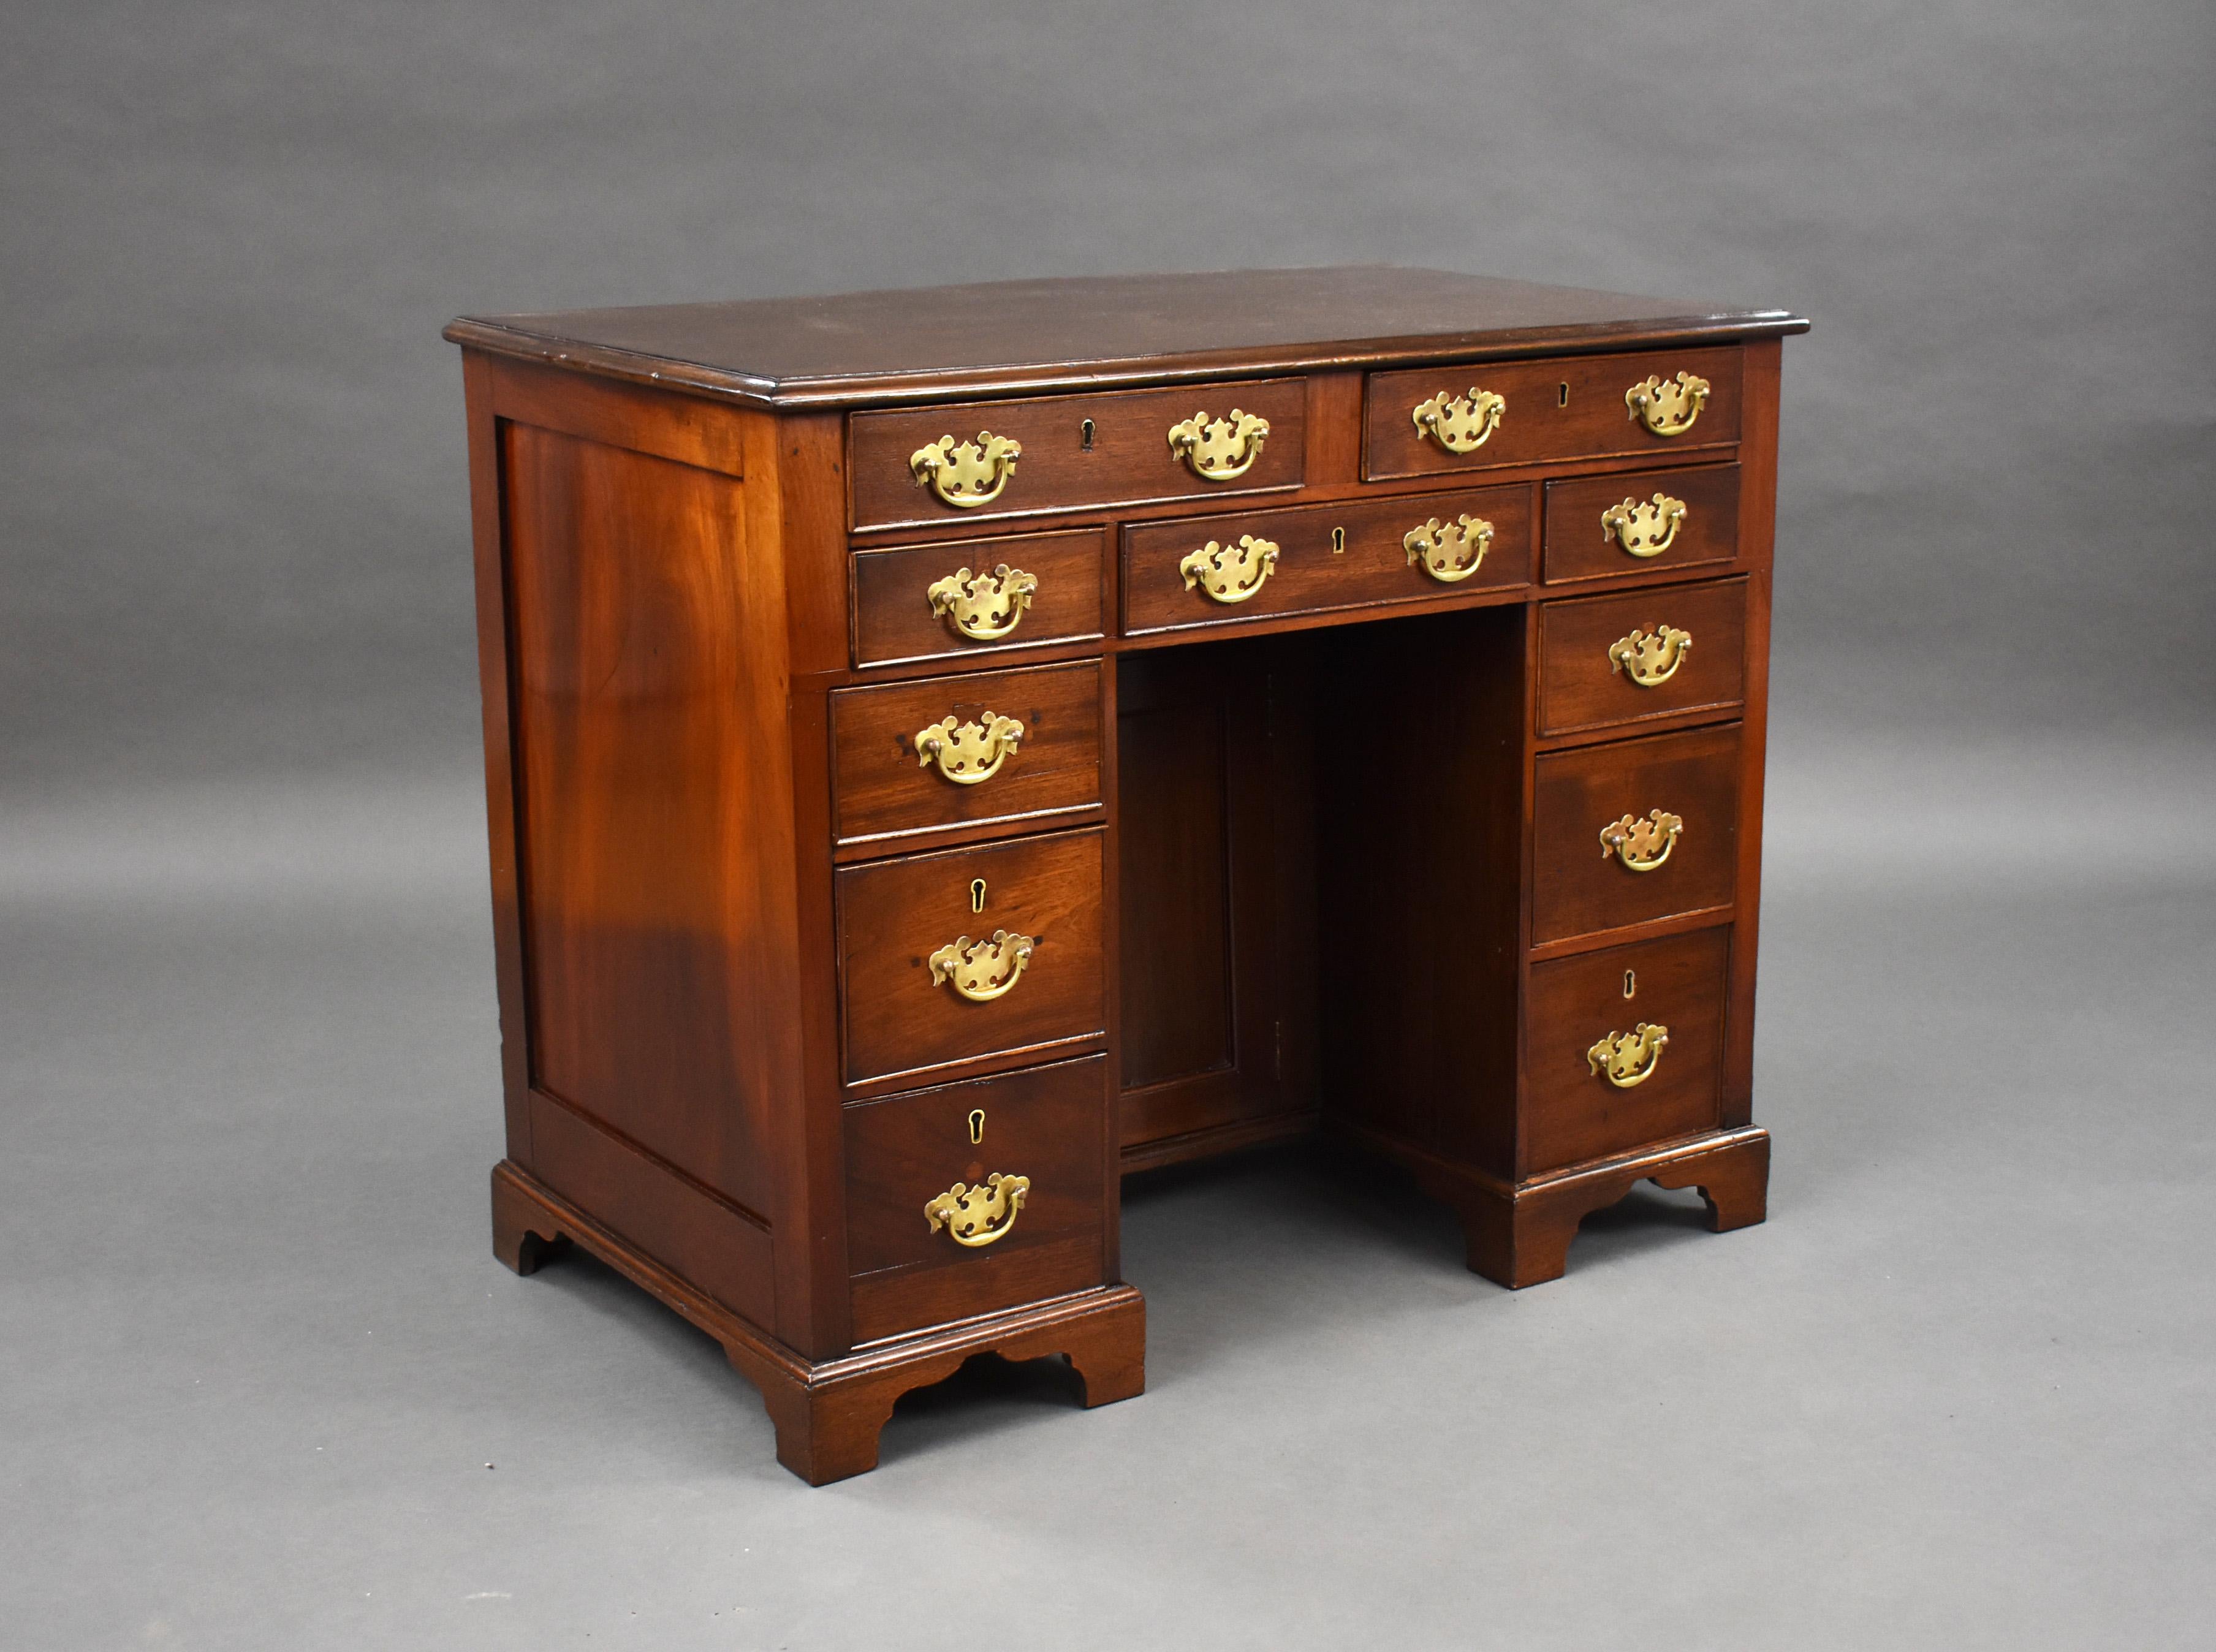 Zum Verkauf steht ein Knielochschreibtisch aus Mahagoni von George III. mit insgesamt 11 Schubladen und einem Schrank in der Mitte. Der Schreibtisch steht auf kleinen Klammerfüßen und ist für sein Alter in sehr gutem Zustand. 

Maße: Breite: 93cm,